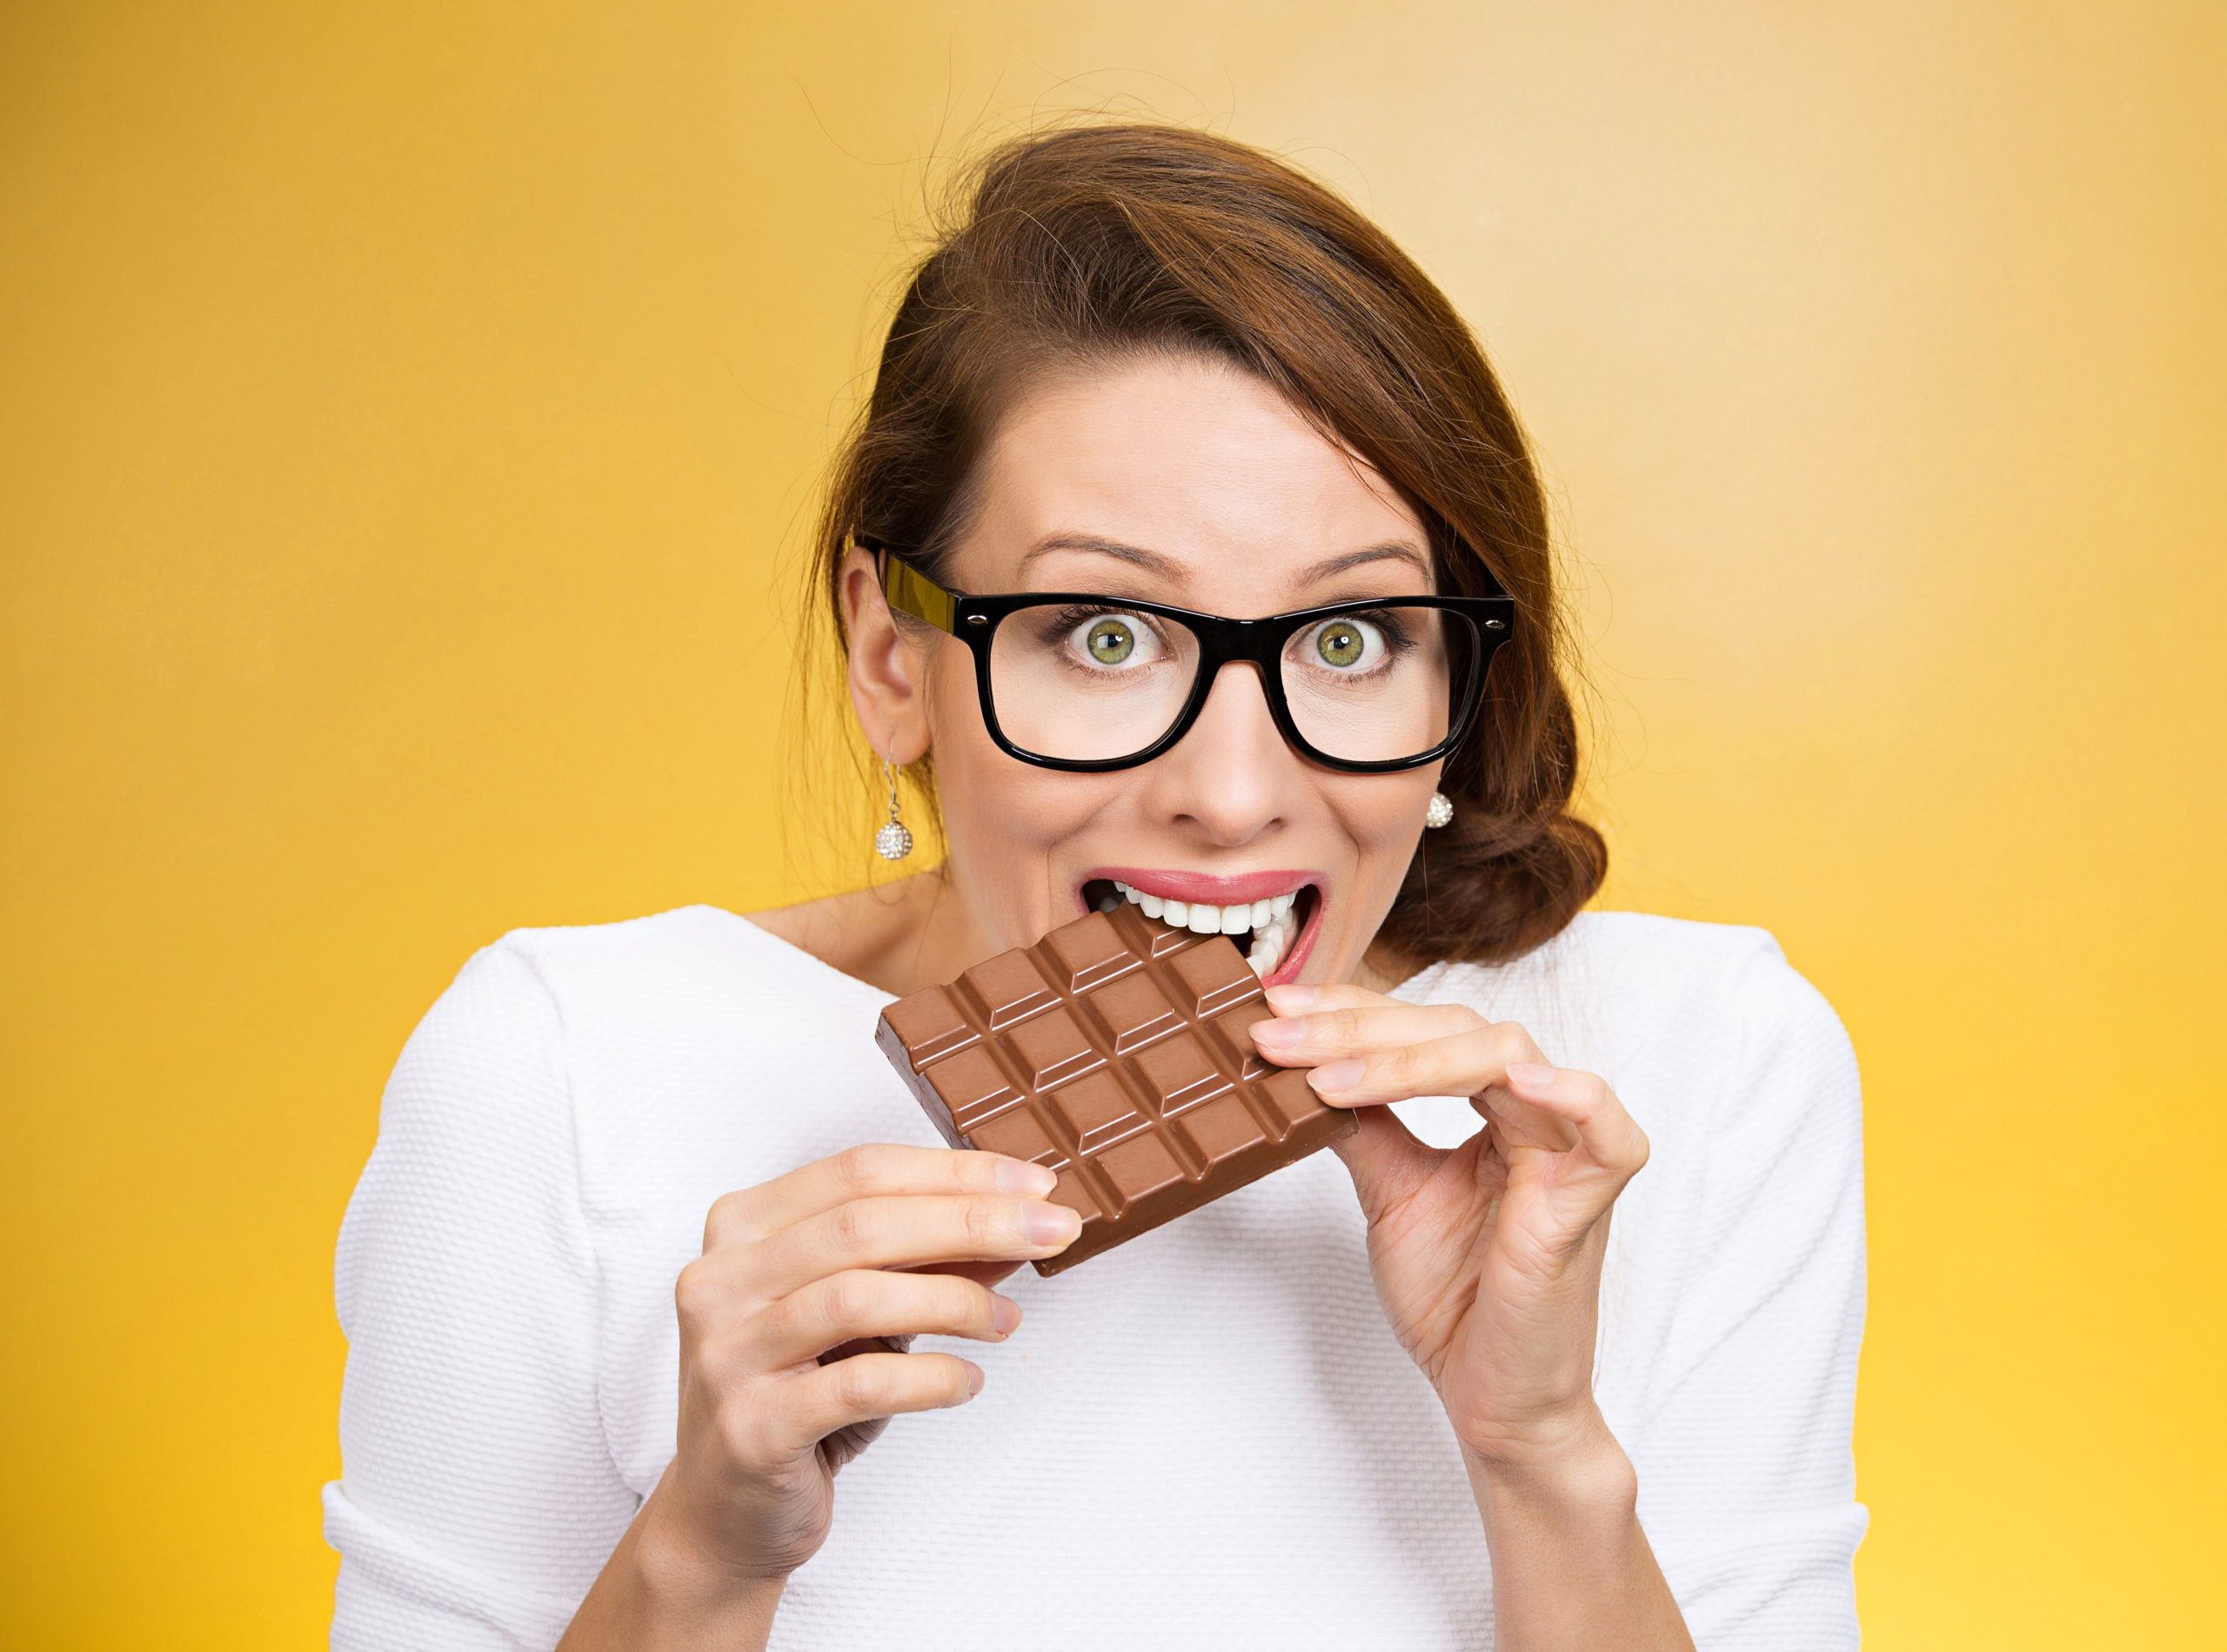 Говорящая шоколада. Человек ест шоколад. Кушать шоколад. Девушка в шоколаде. Женщина ест шоколад.